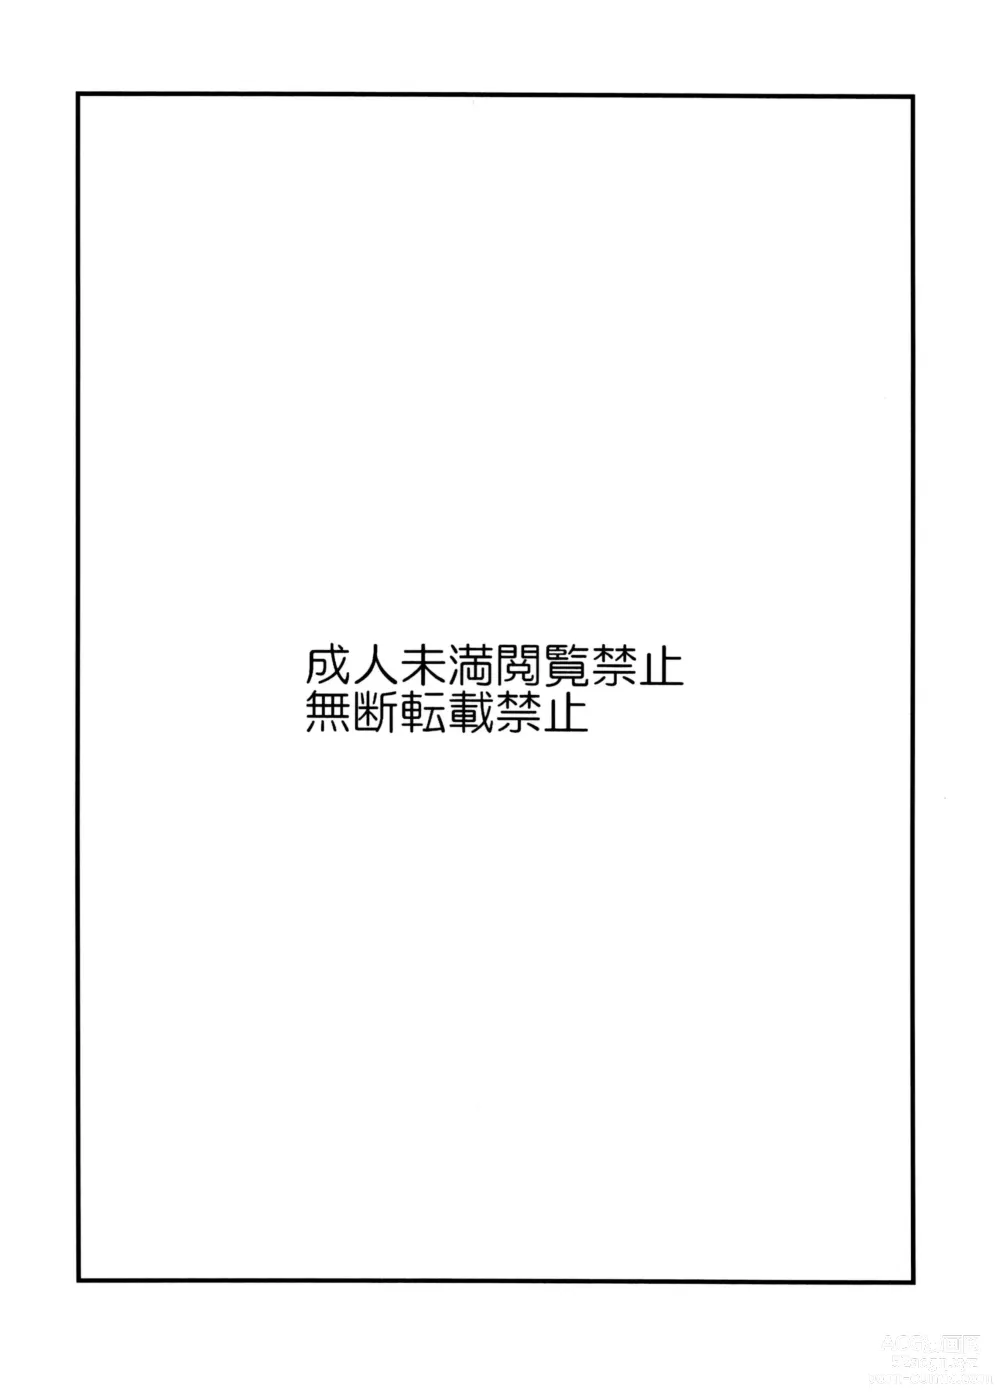 Page 3 of doujinshi Guchuguchu Nuchinuchu Mahou no Doppyun Onaho de Sotsugyou